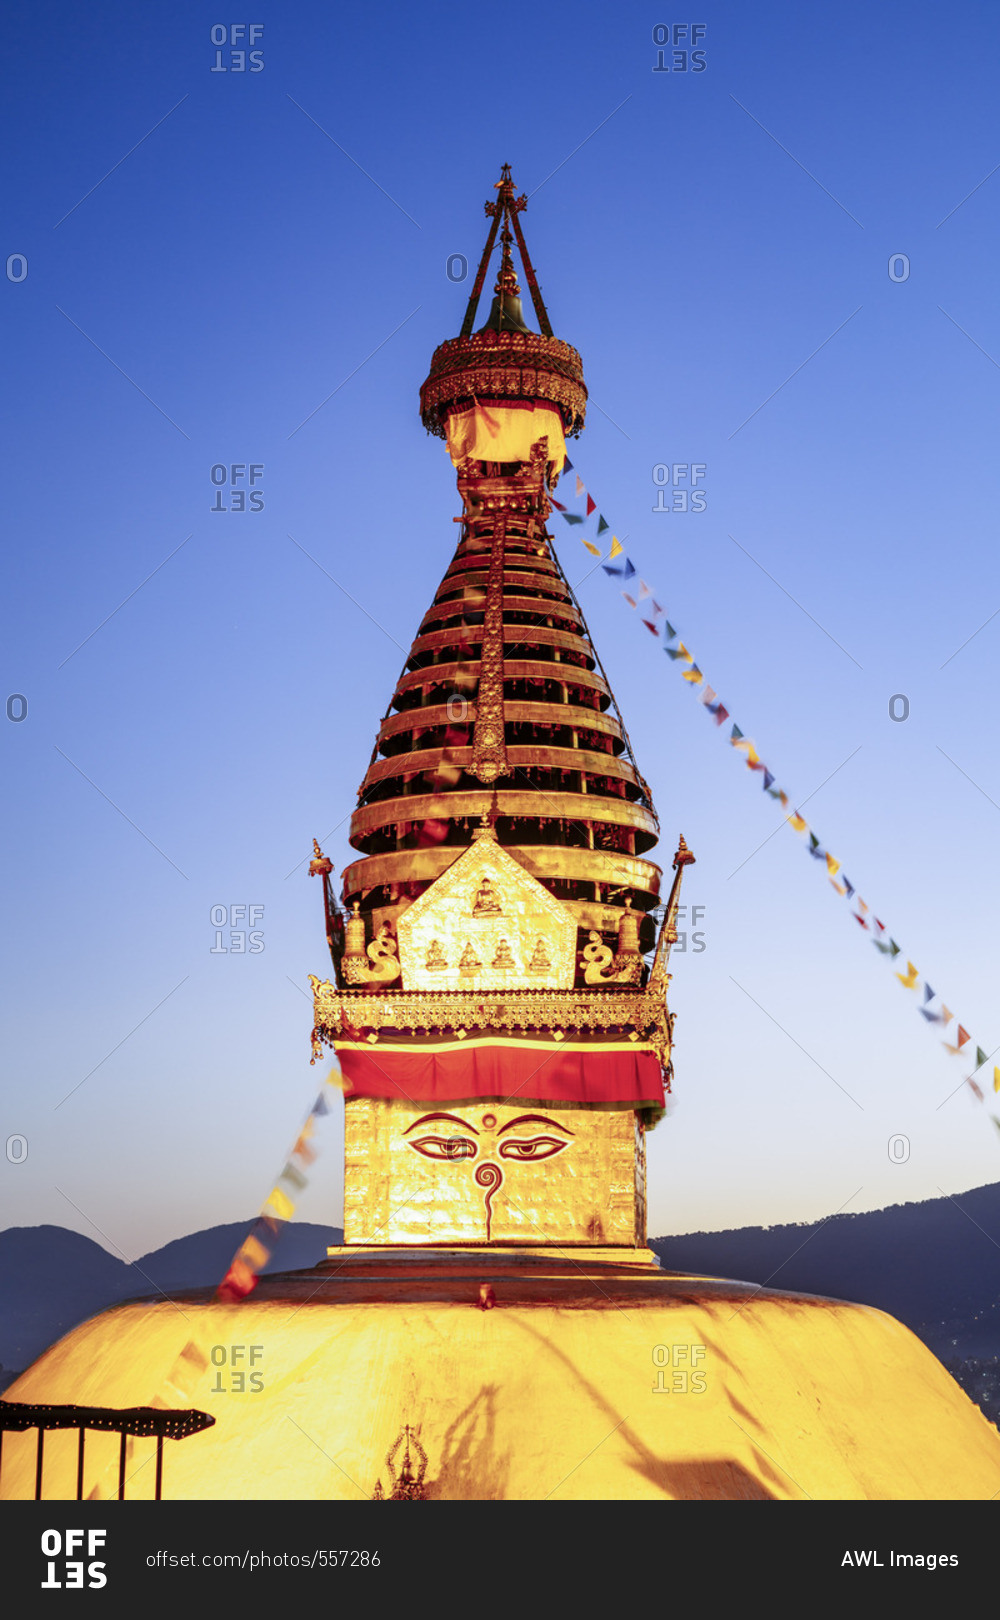 Swayambhunath temple (also known as Monkey temple) at sunset, Kathmandu, Nepal